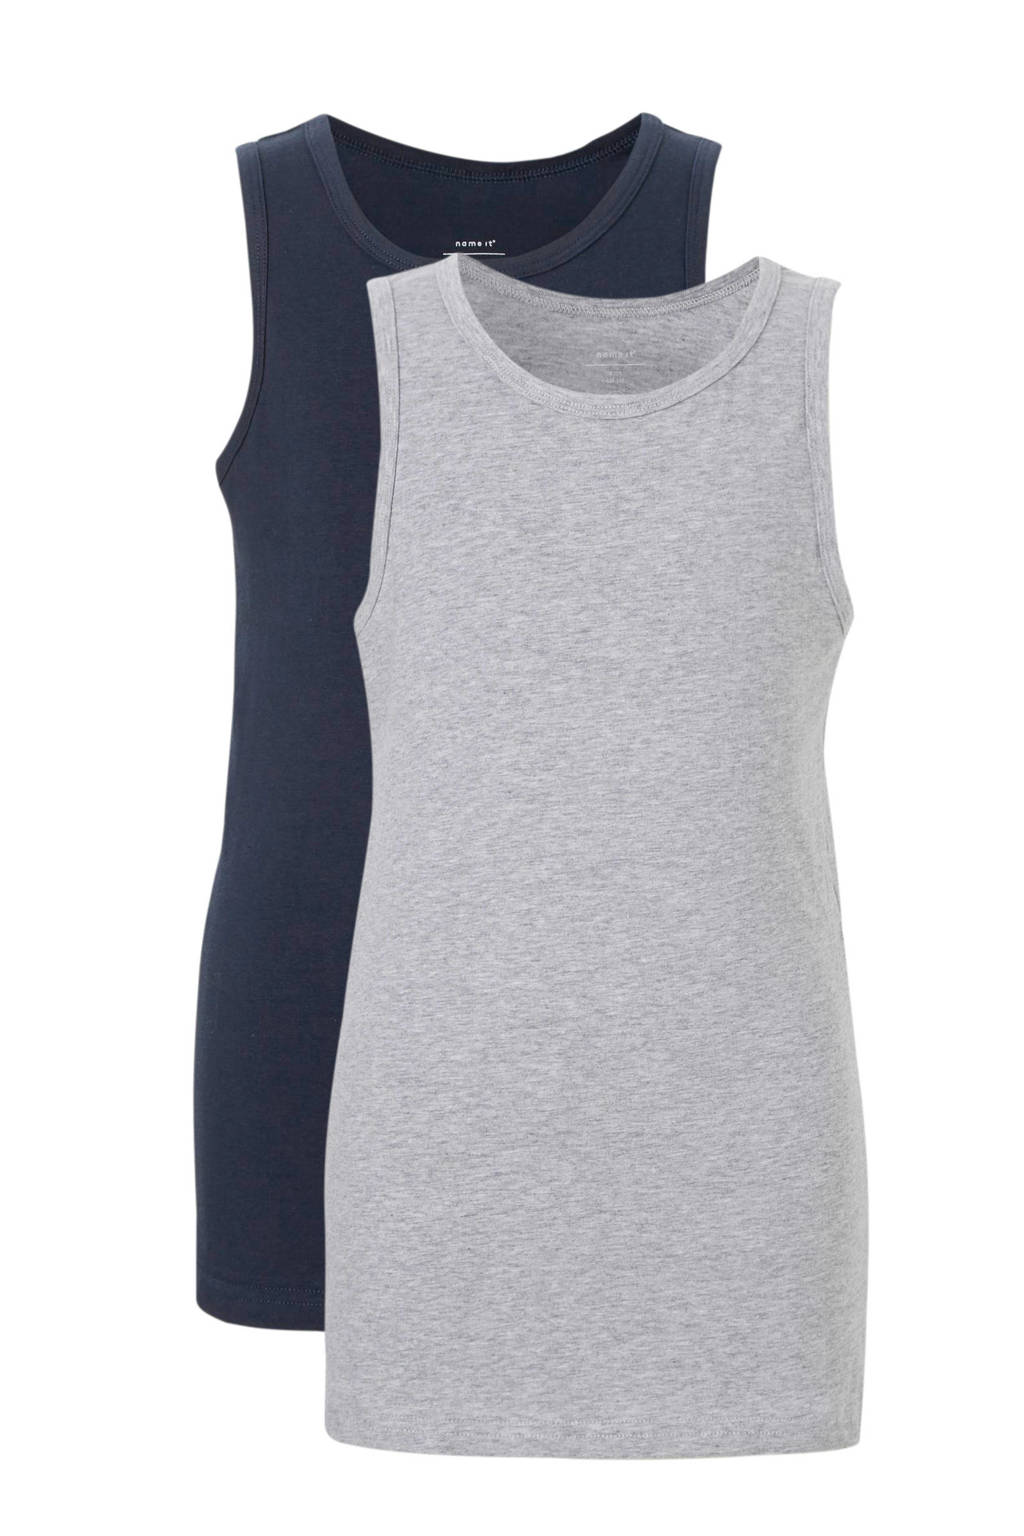 hemd - set van 2 grijs melange/donkerblauw